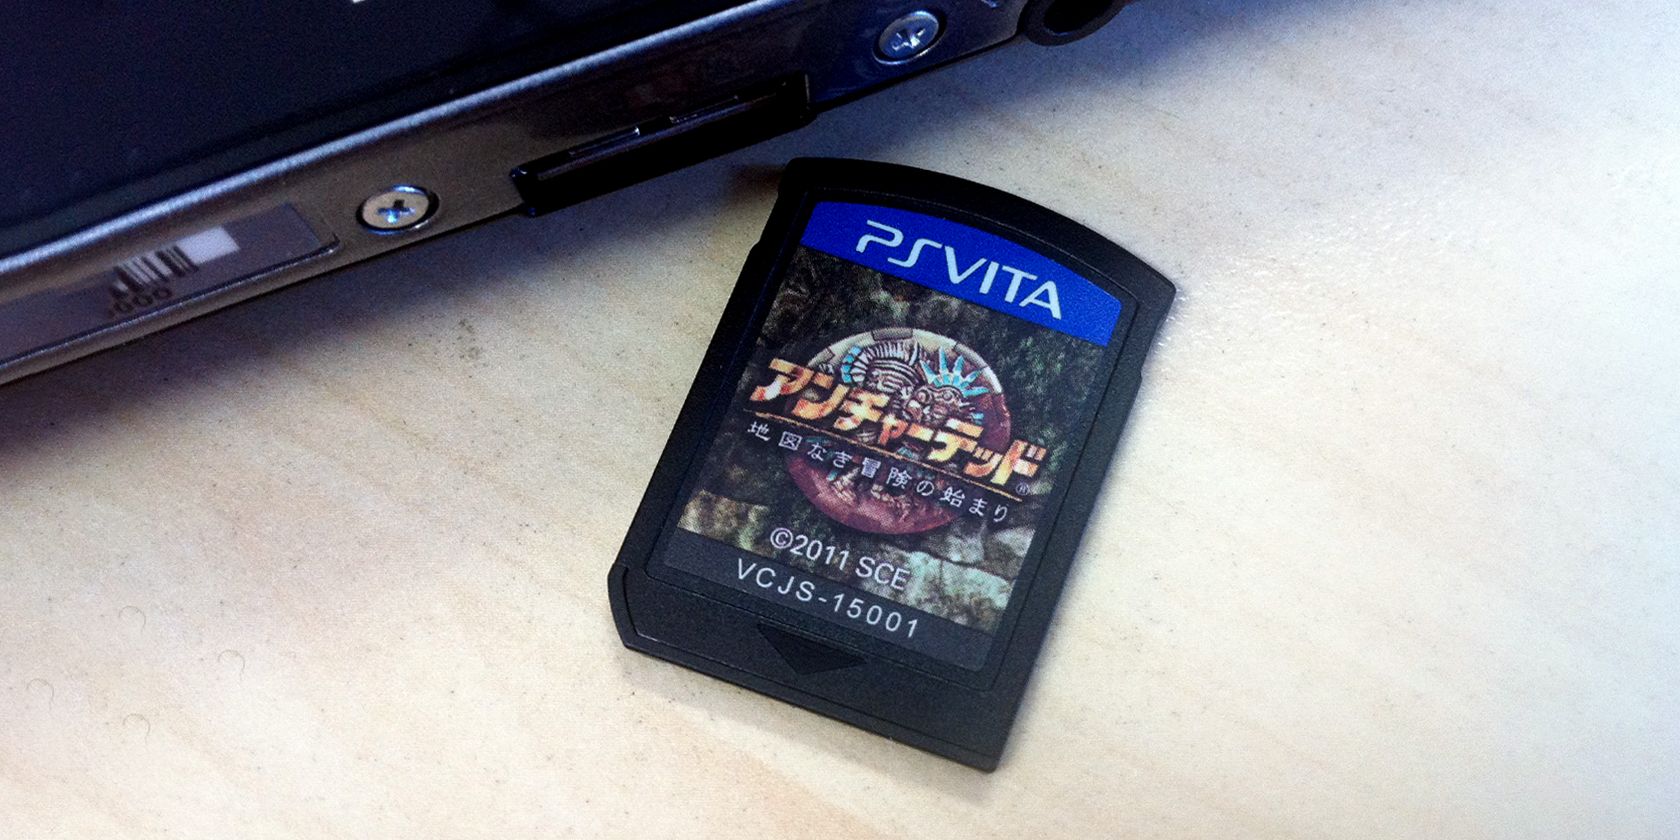 PS Vita memory card